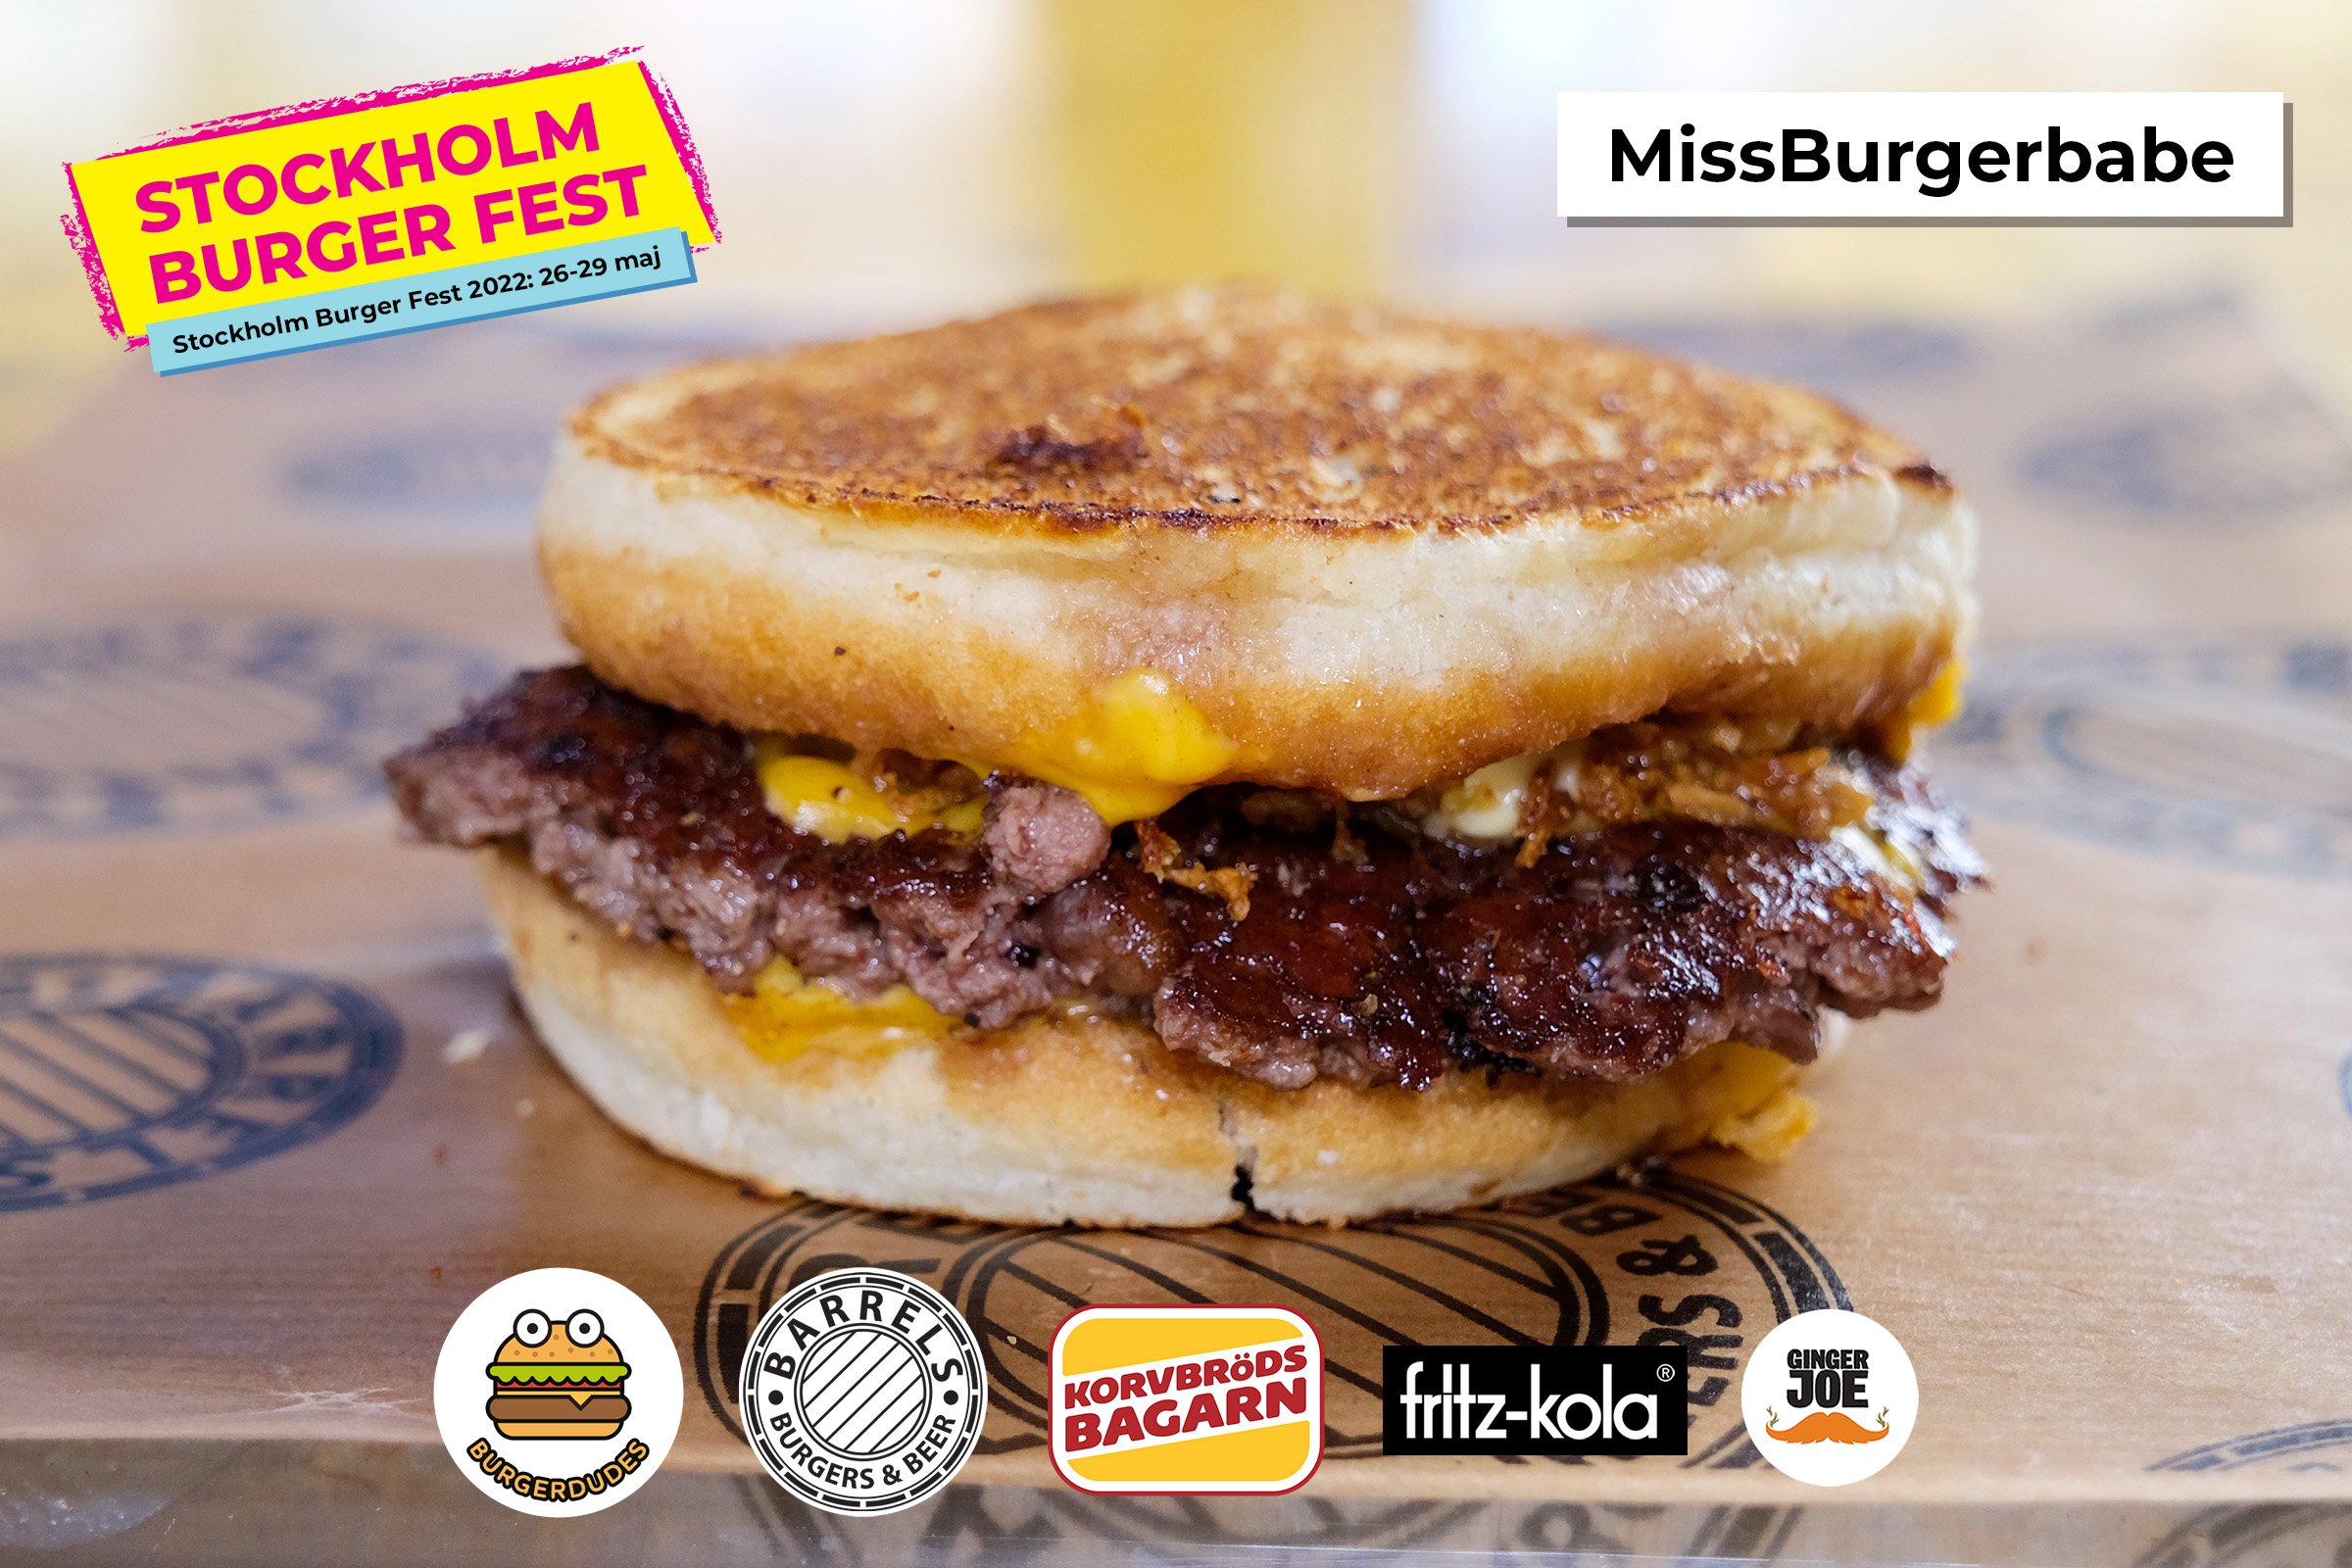 Stockholm Burger Fest 2022: MissBurgerbabe